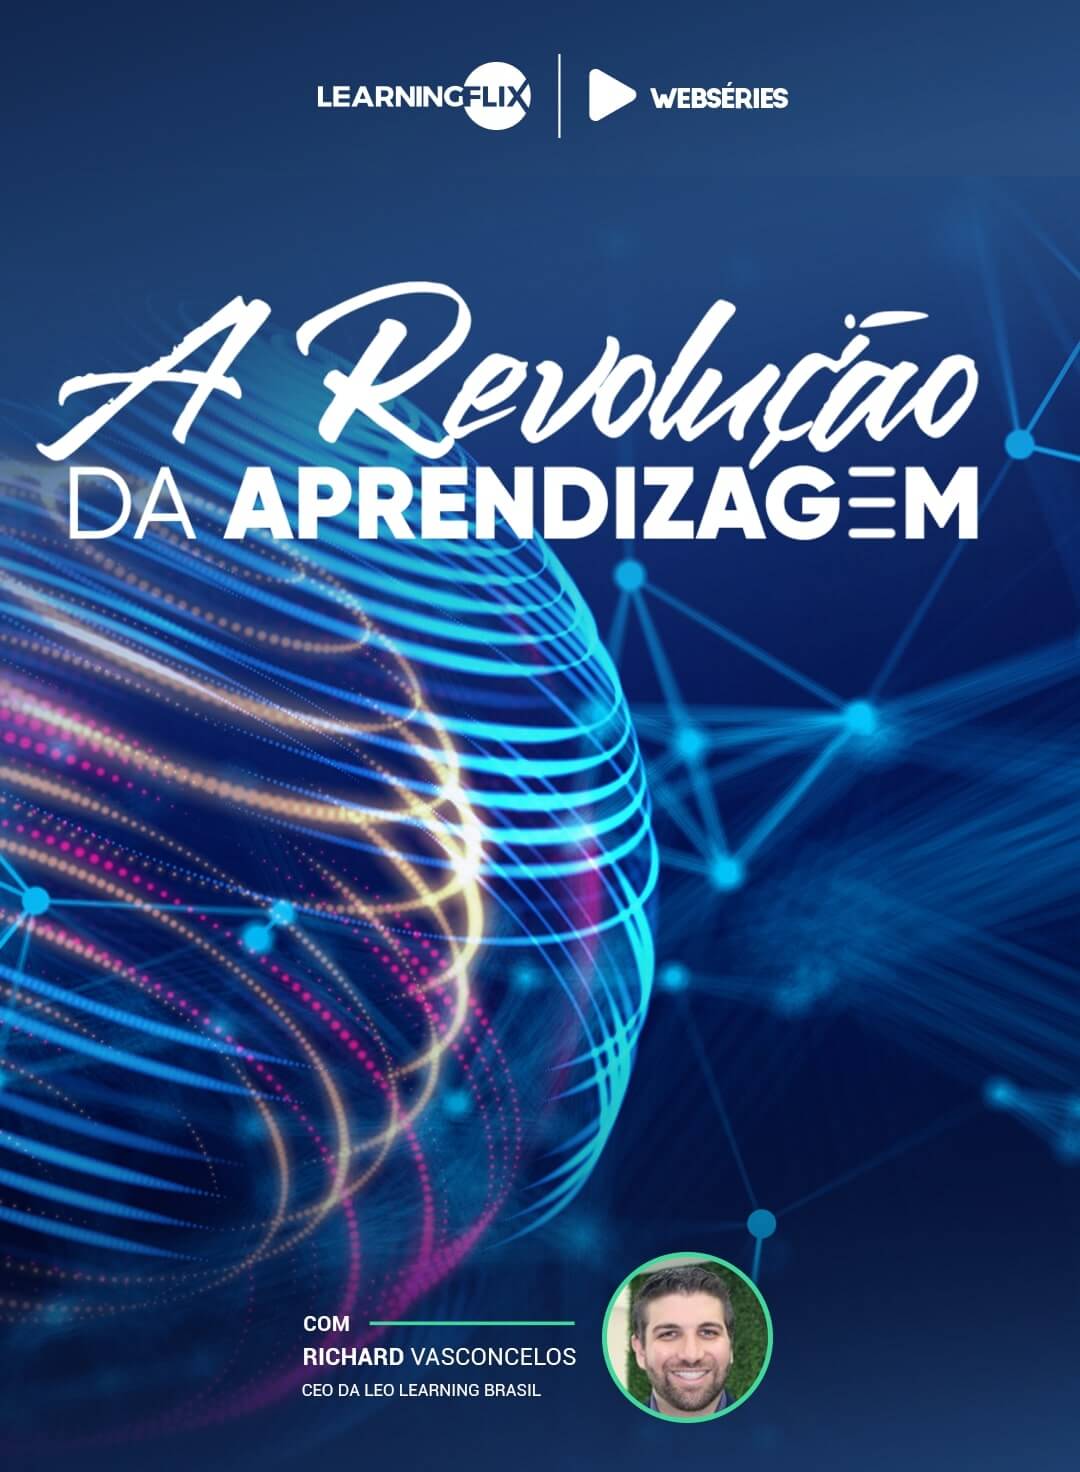 capa da websérie A Revolução da Aprendizagem com Richard Uchoa, CEO de Revvo